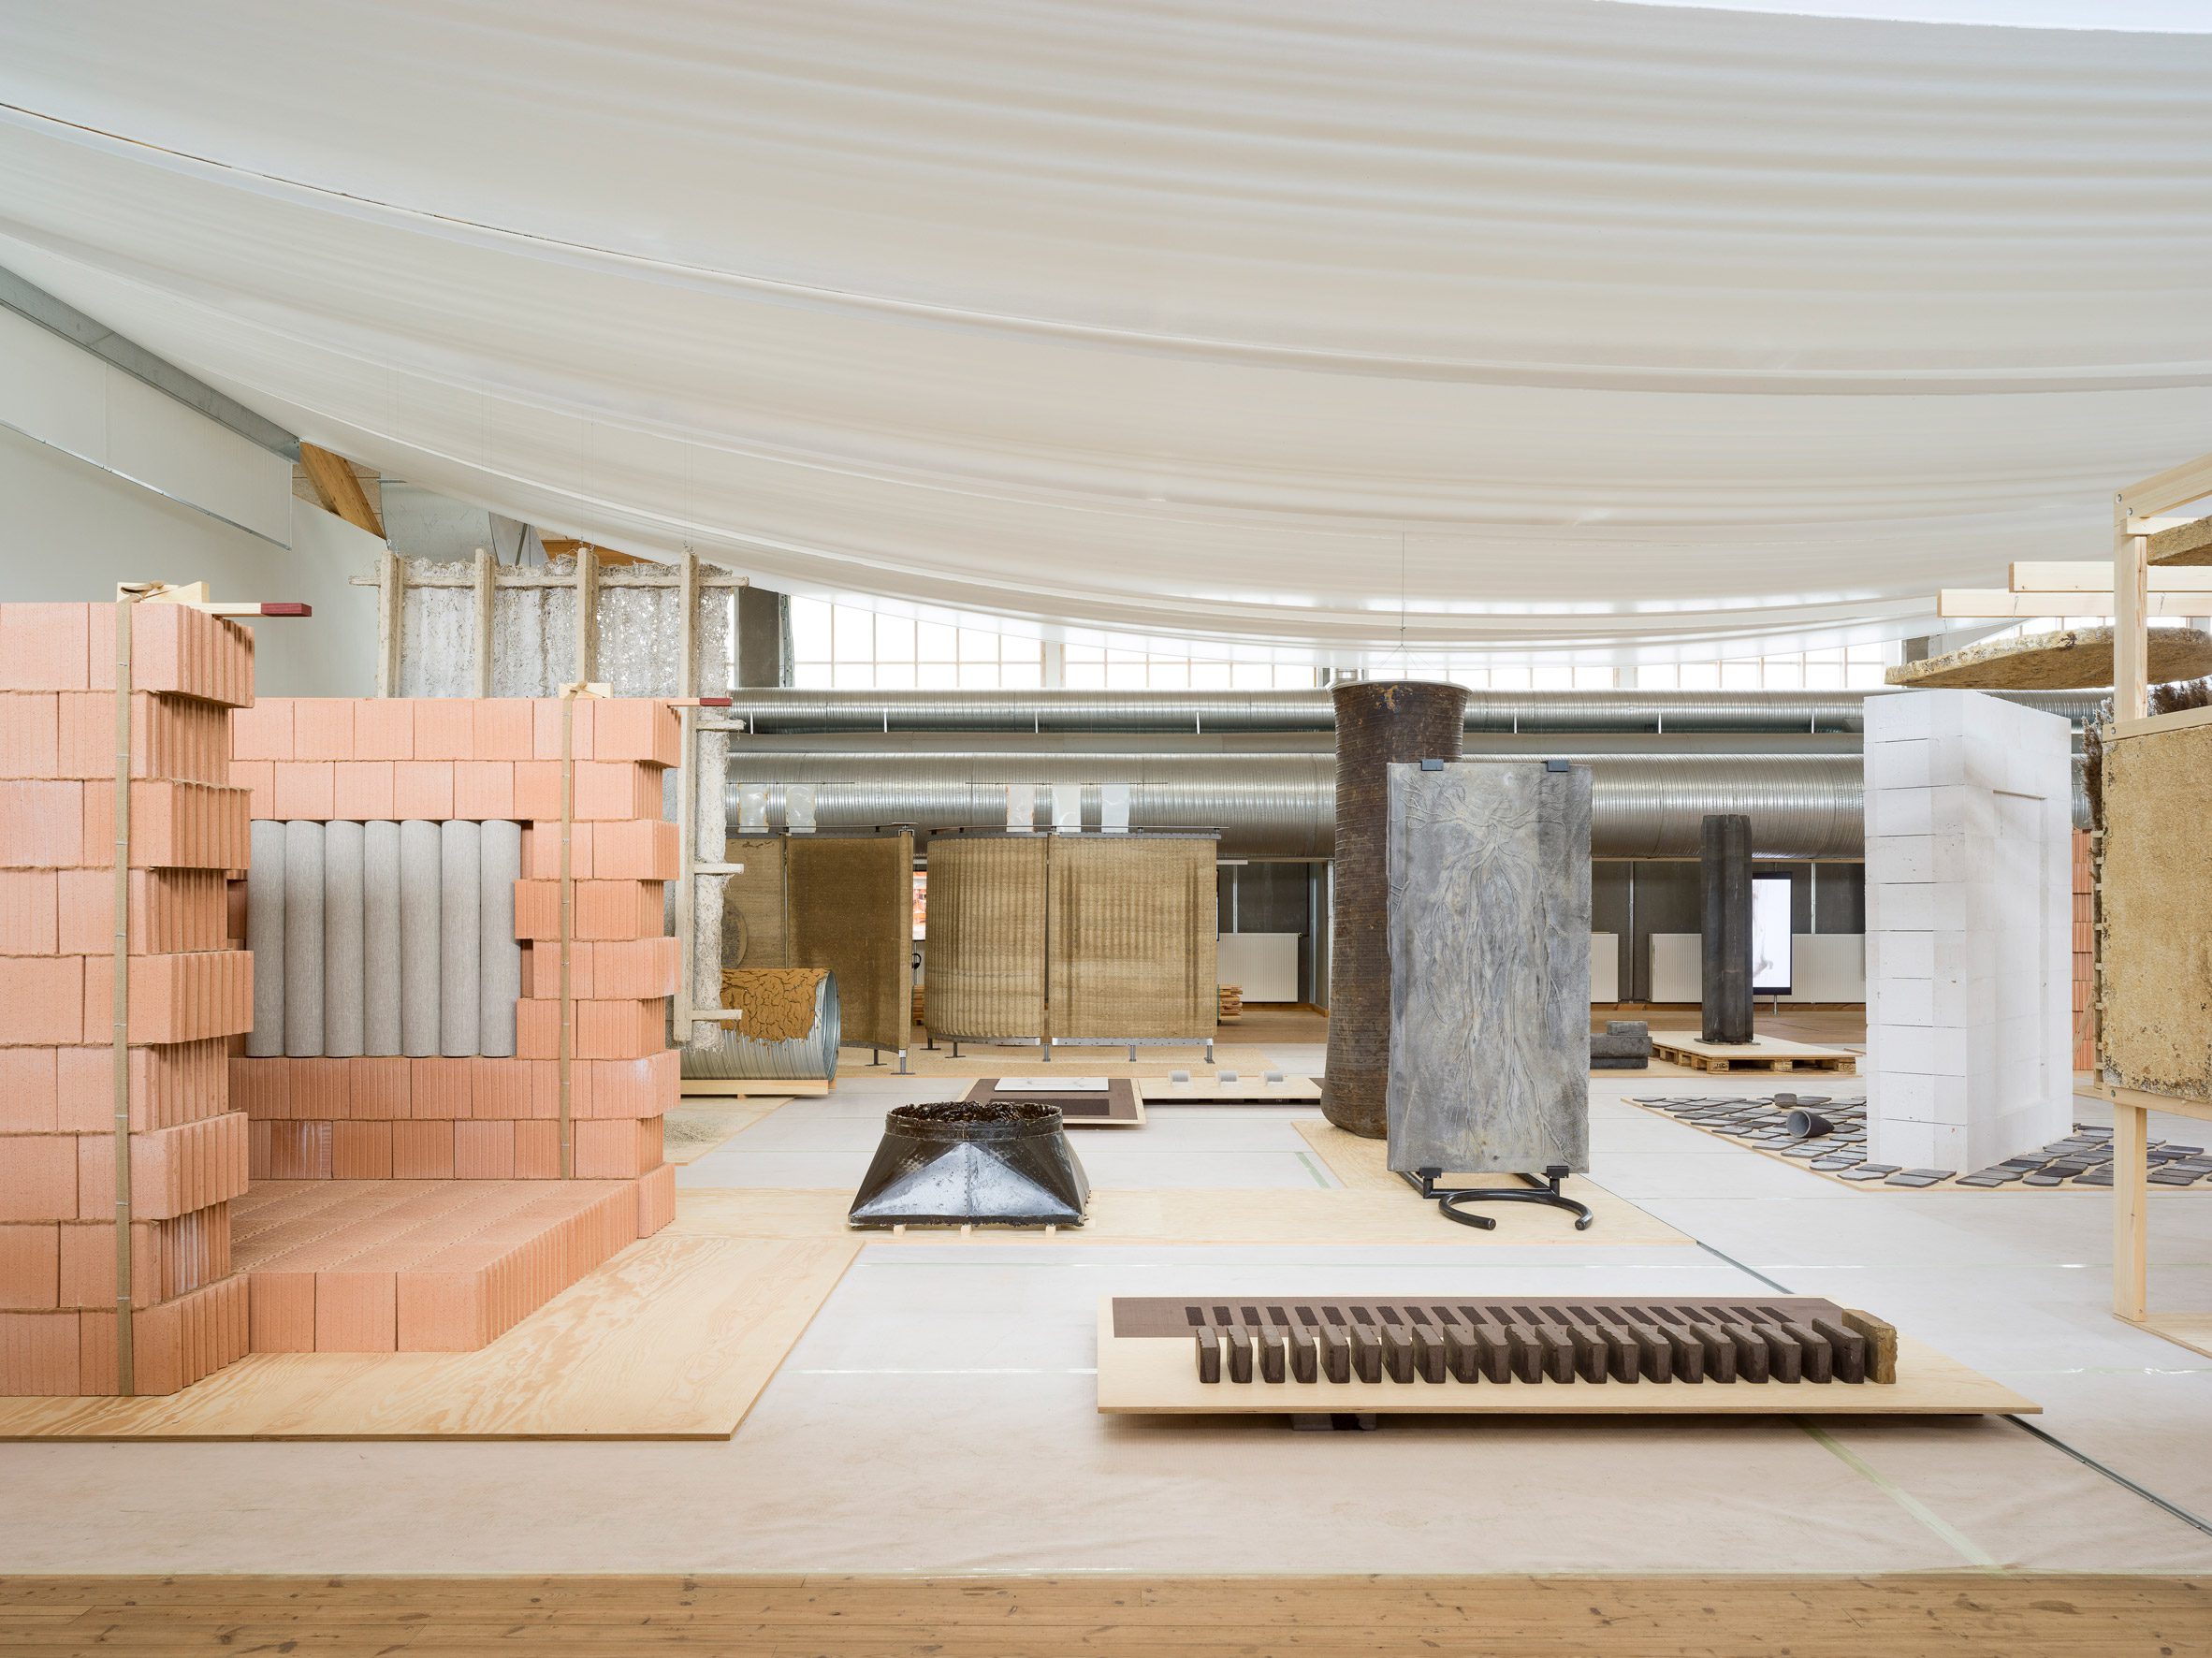 Reset Materials exhibition at Copenhagen Contemporary